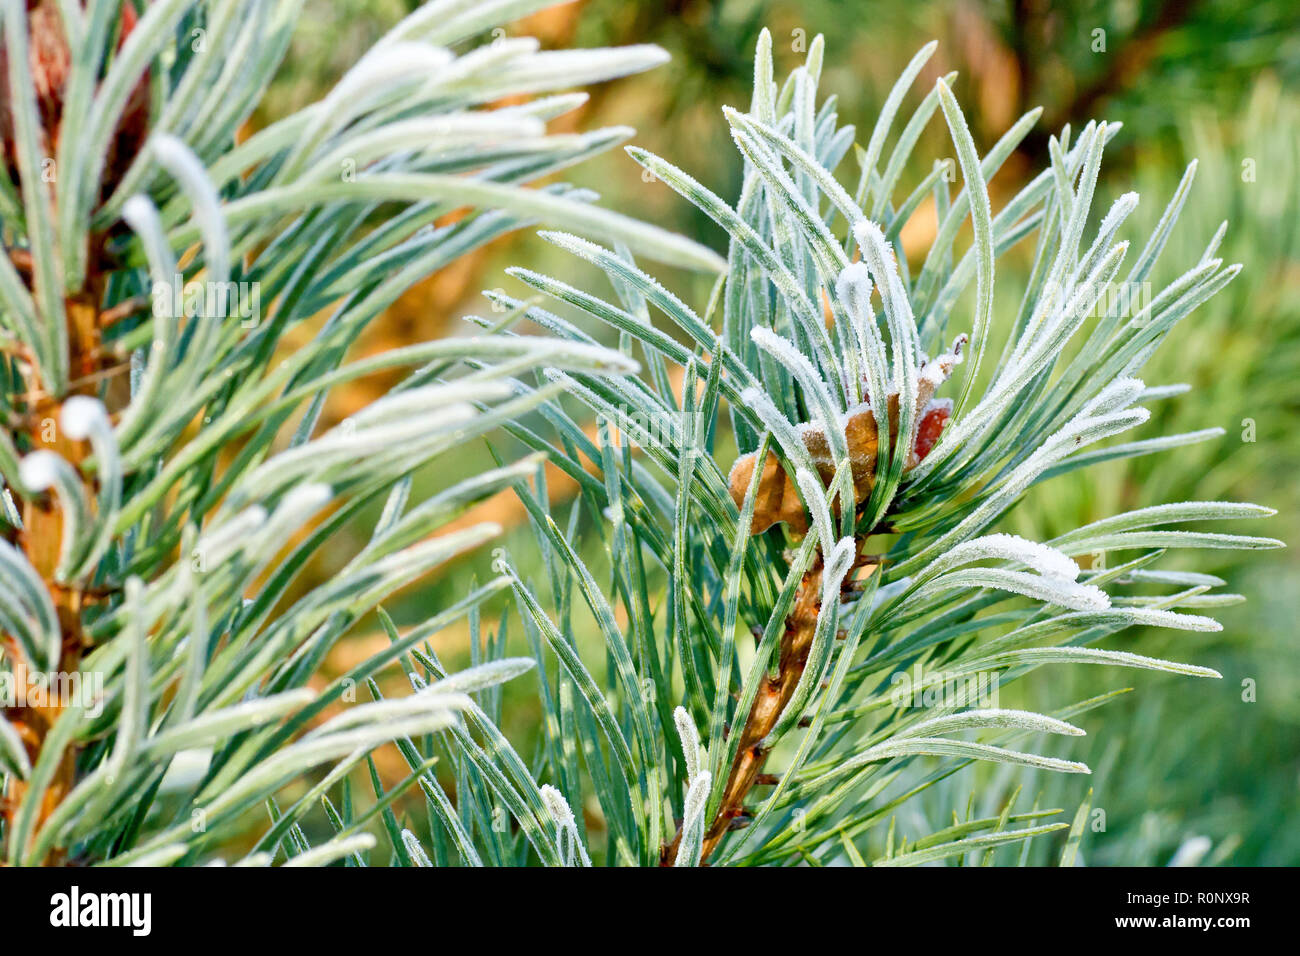 Di Pino silvestre (Pinus sylvestris), una chiusura degli aghi leggermente rivestita in gelo e illuminata da un caldo ma debole sole invernale. Foto Stock